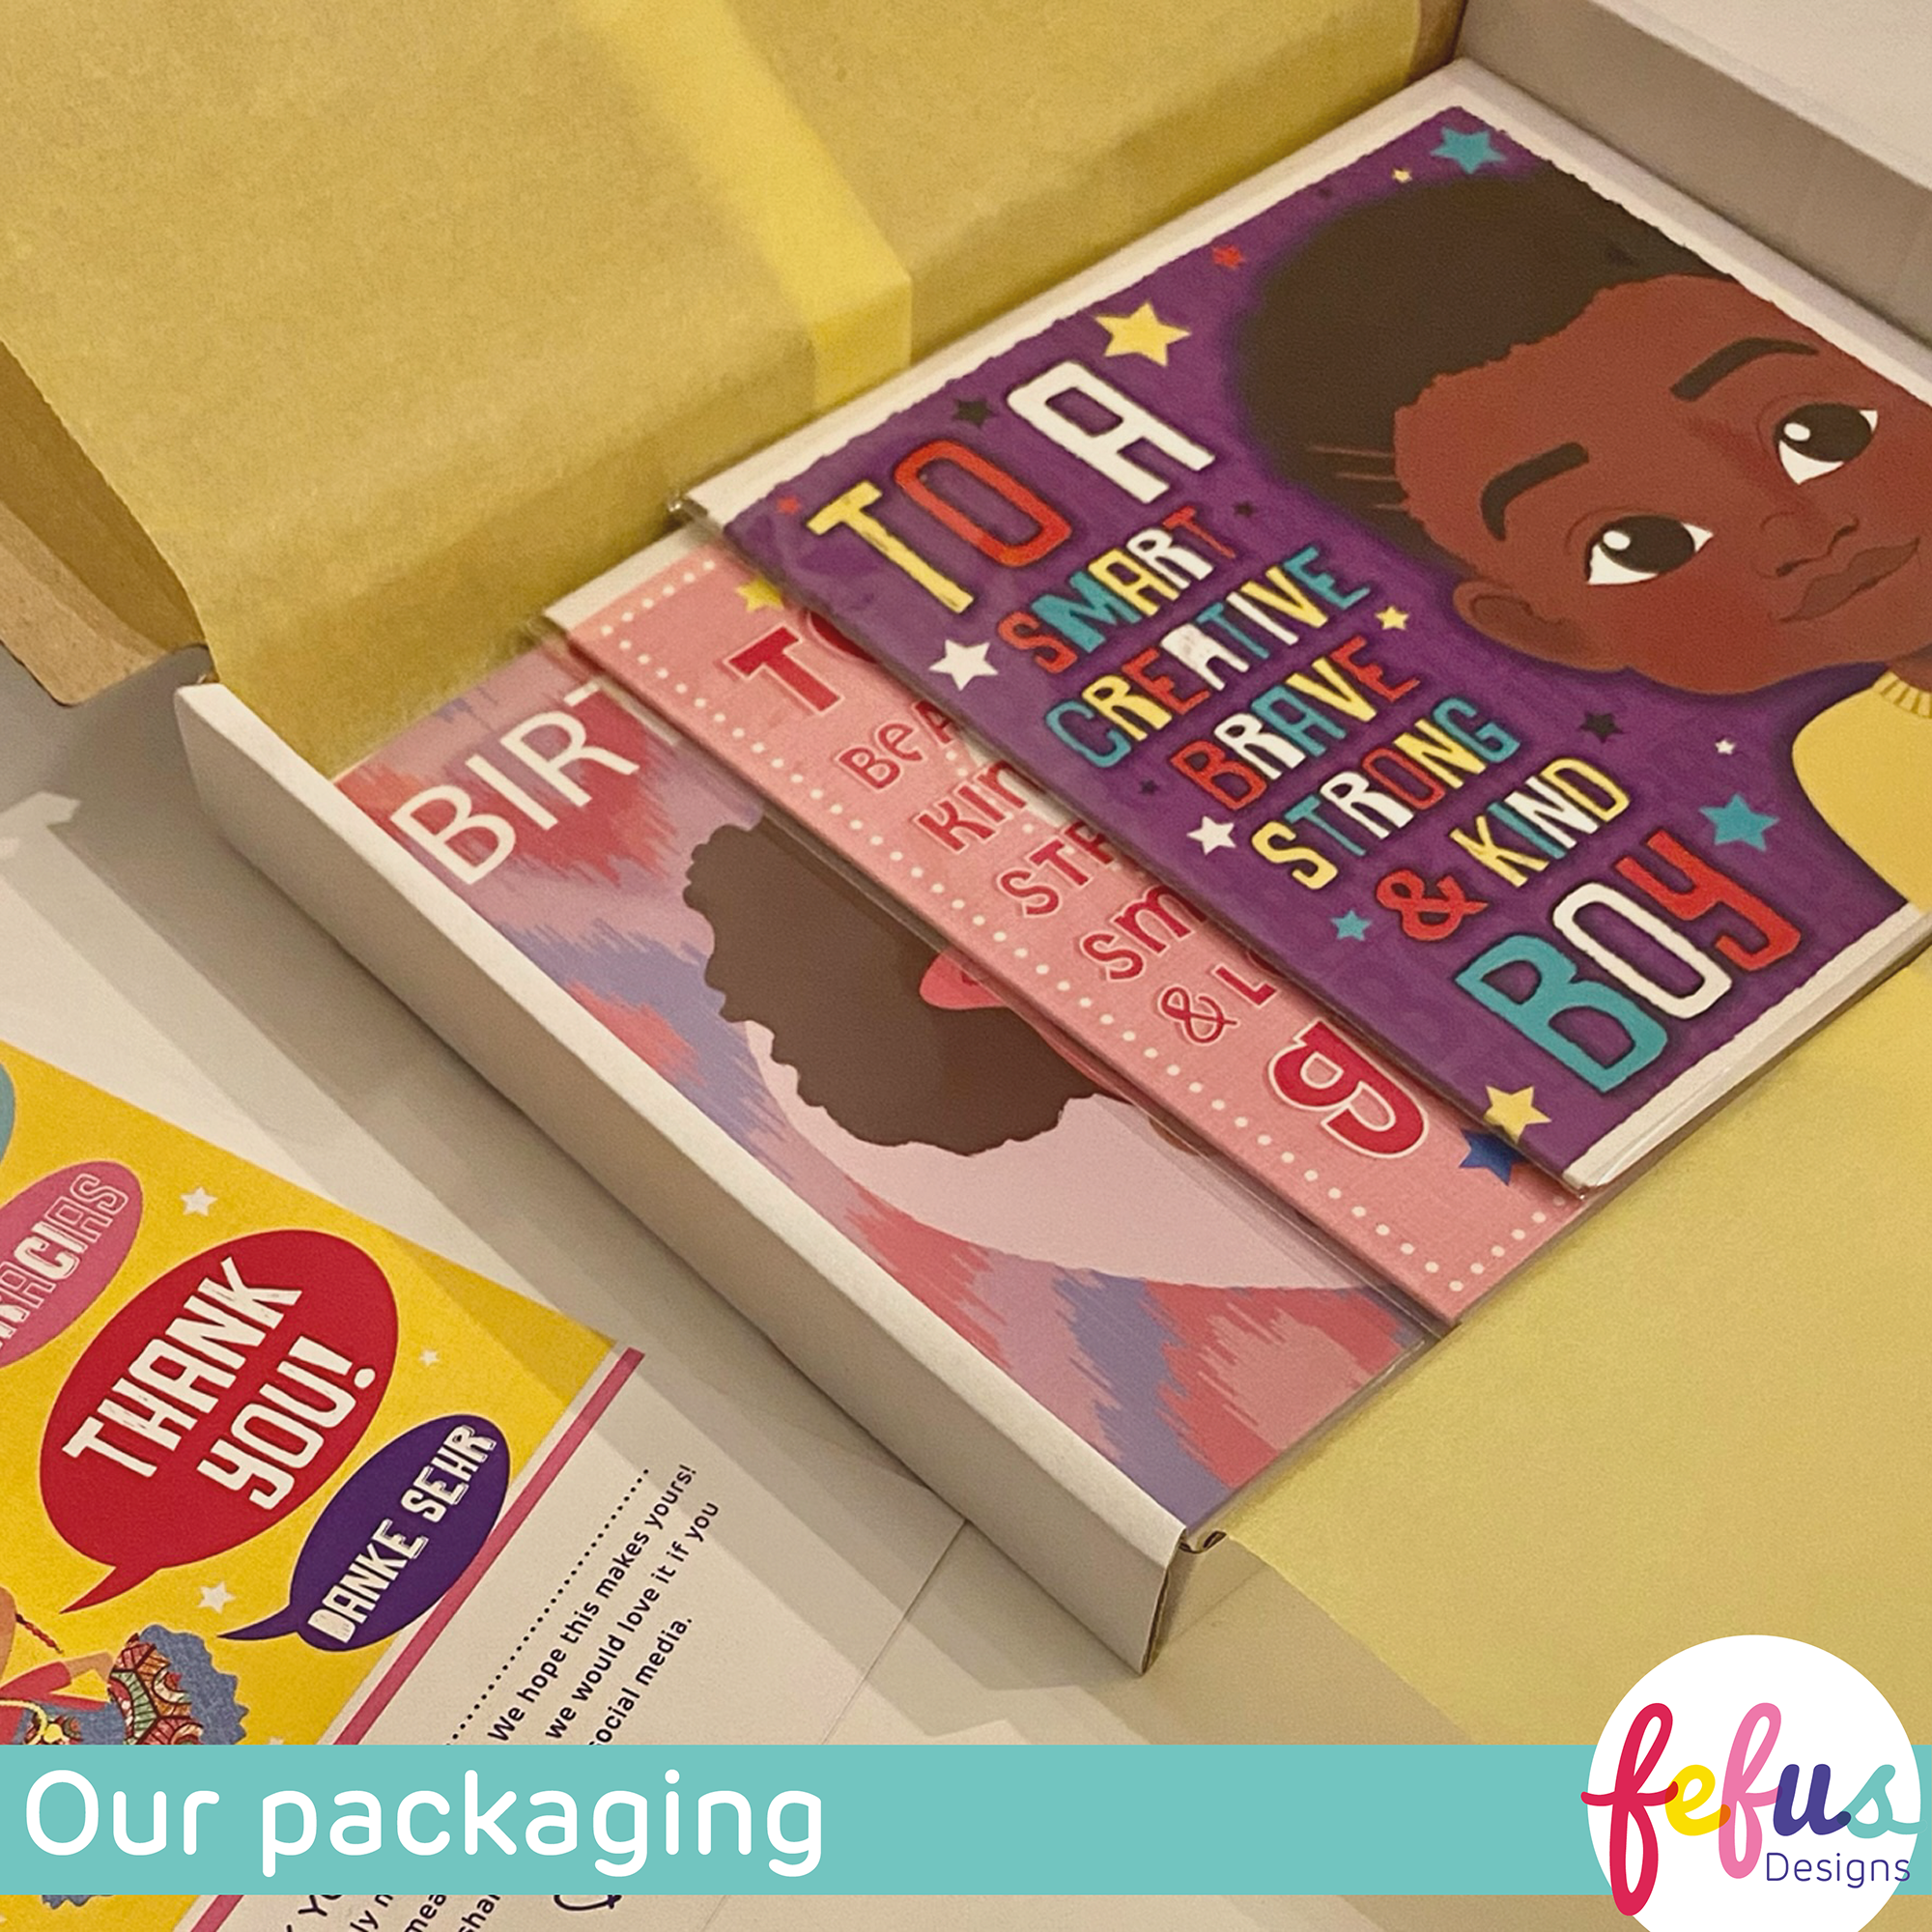 PINKY BRAIDS - Black Childrens Greetings Card | Fefus designs